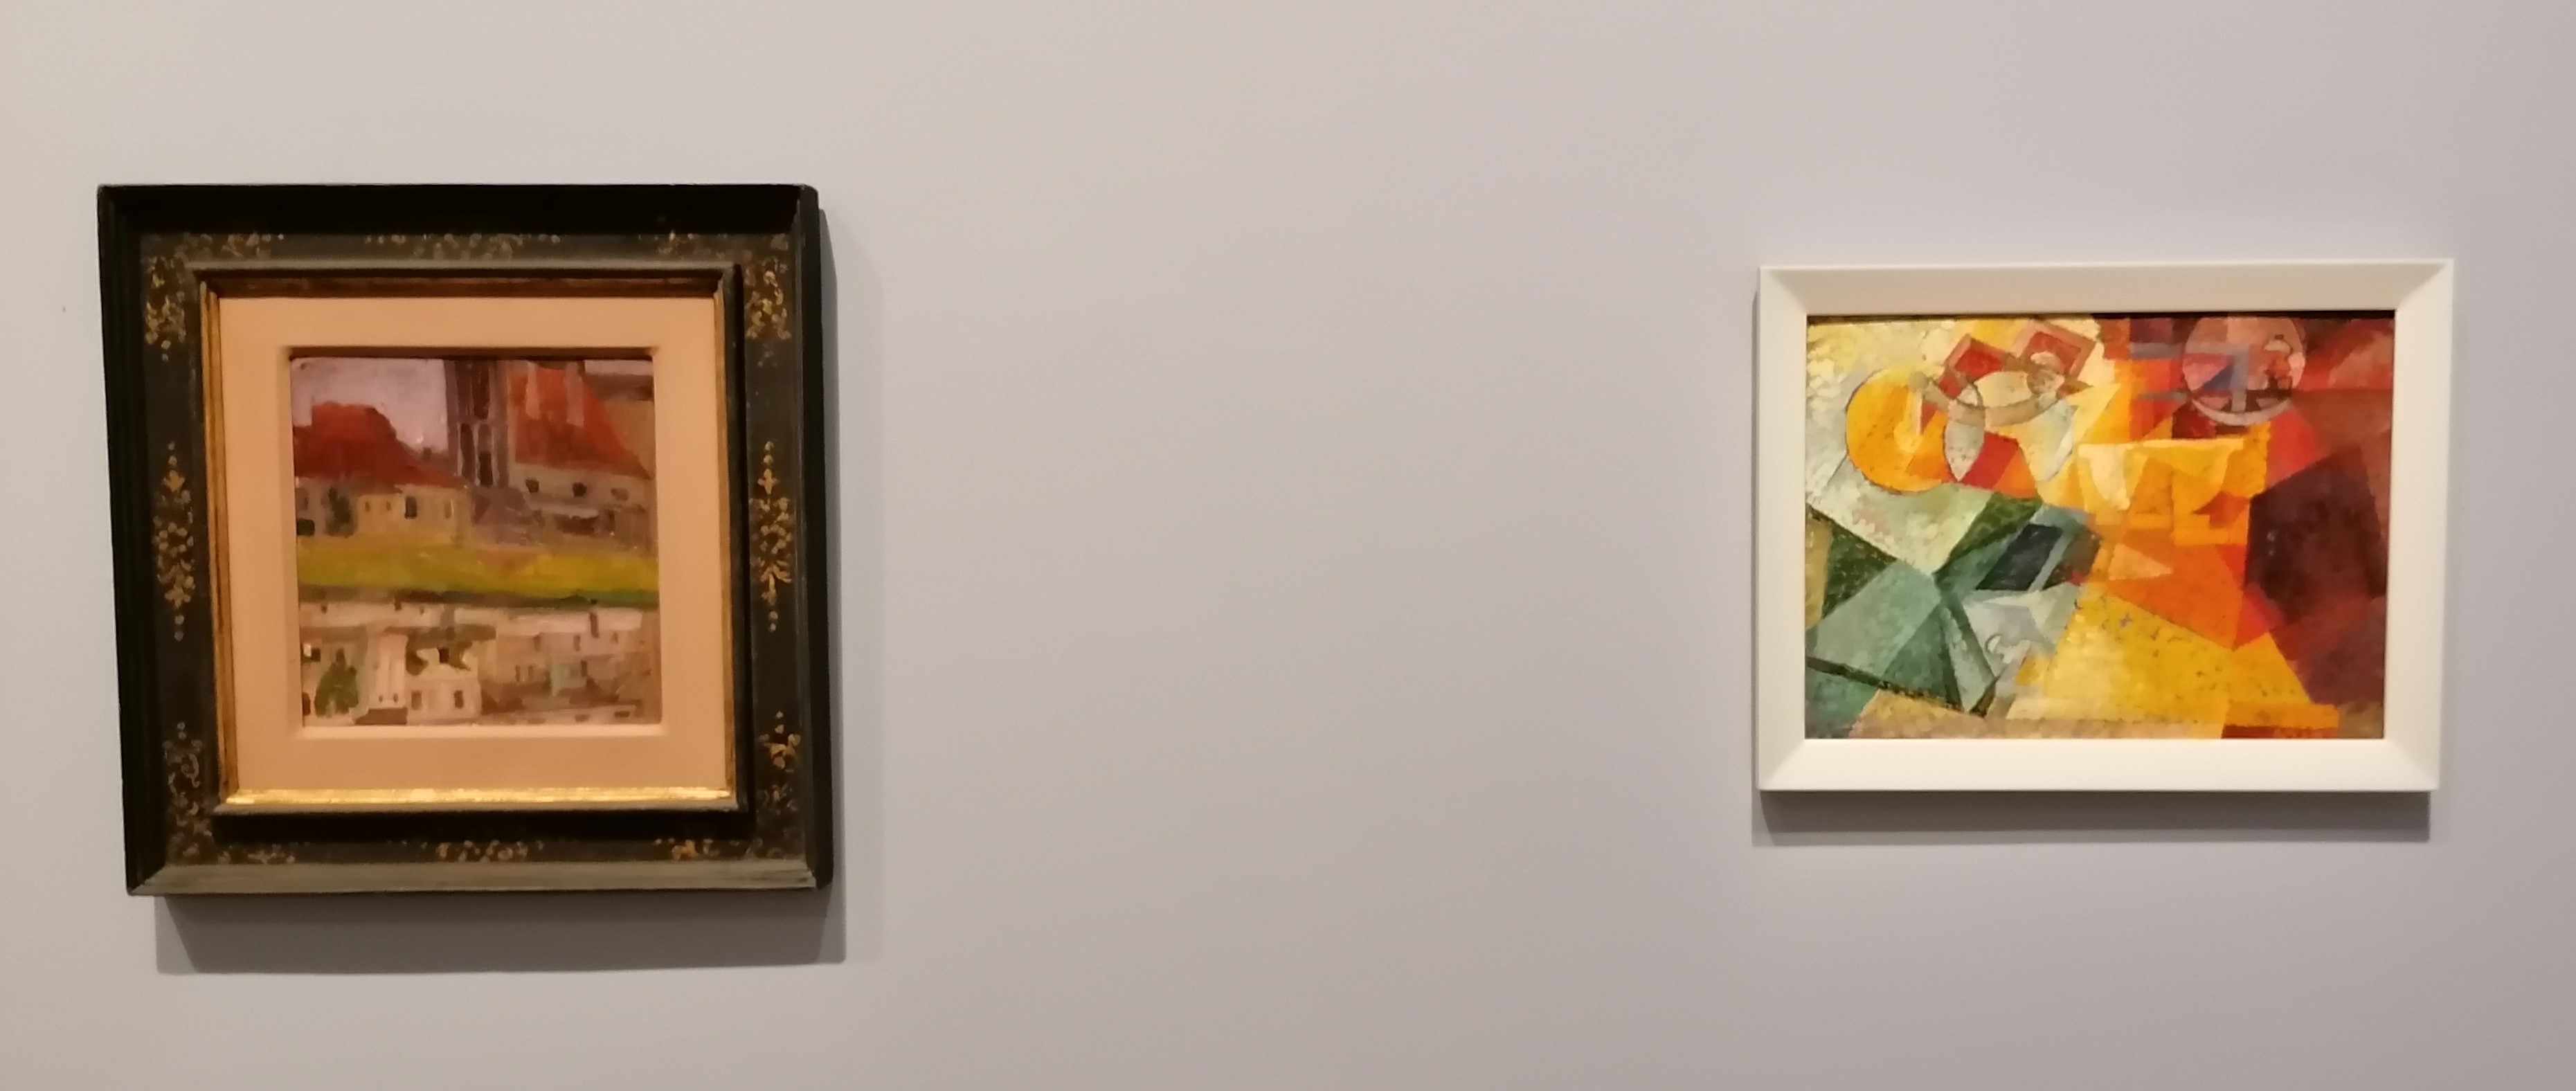 Egon Schiele, Jodokuskirche, sich im Fluss spiegelnd (Krumau), 1908 - Erika Giovanna Klien, Stillleben mit Kaffeemühle, um 1920_Tiroler Landesmuseum Ferdinandeum